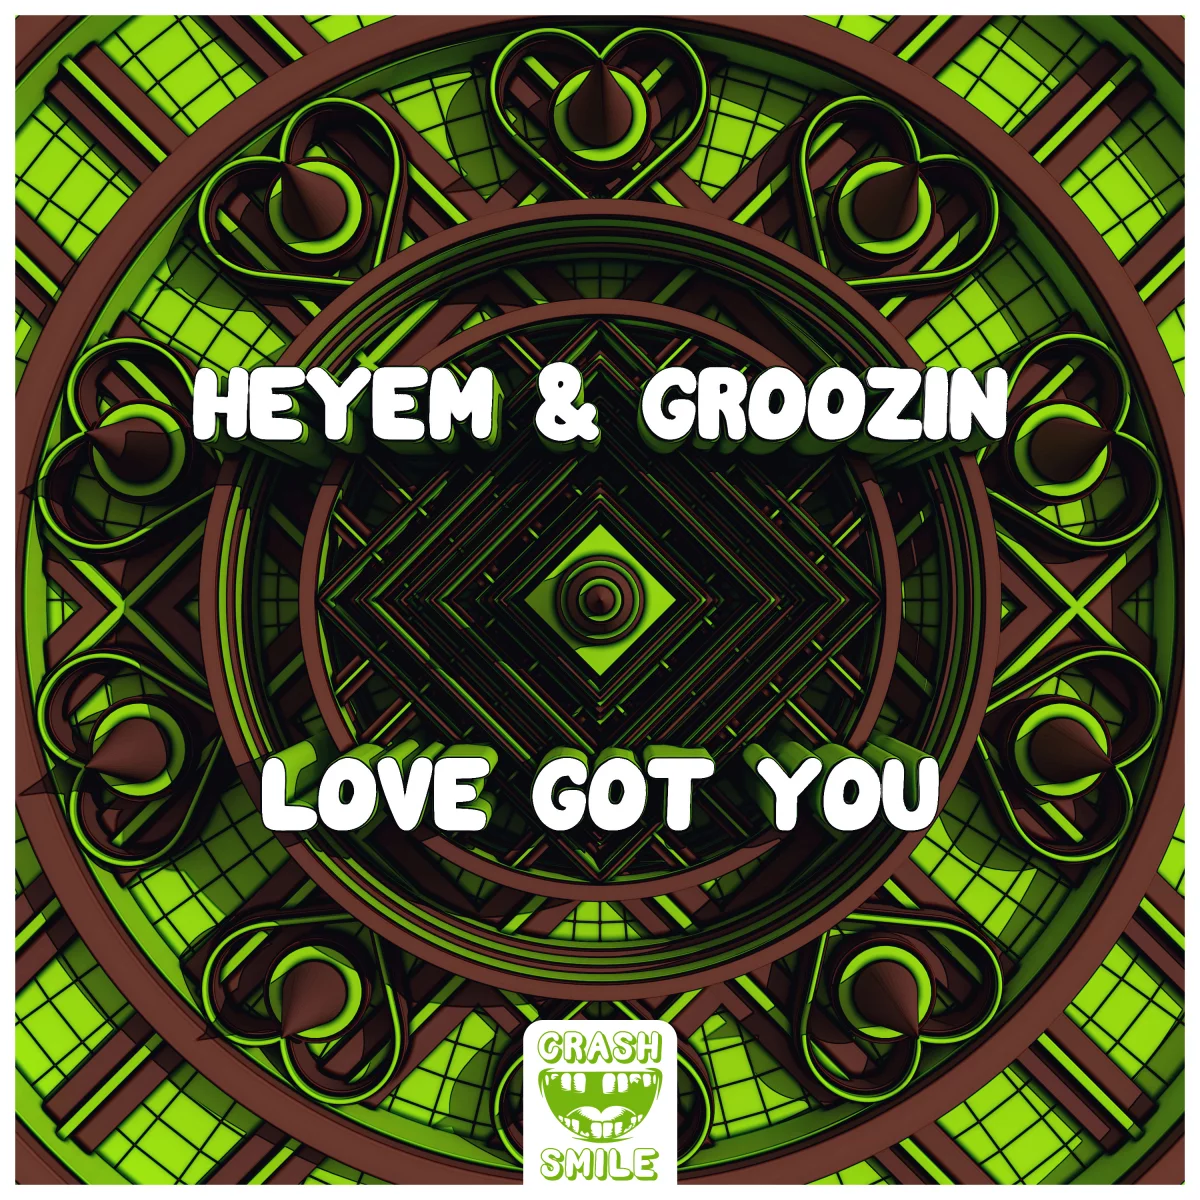 Love Got You - Heyem & Groozin⁠ 